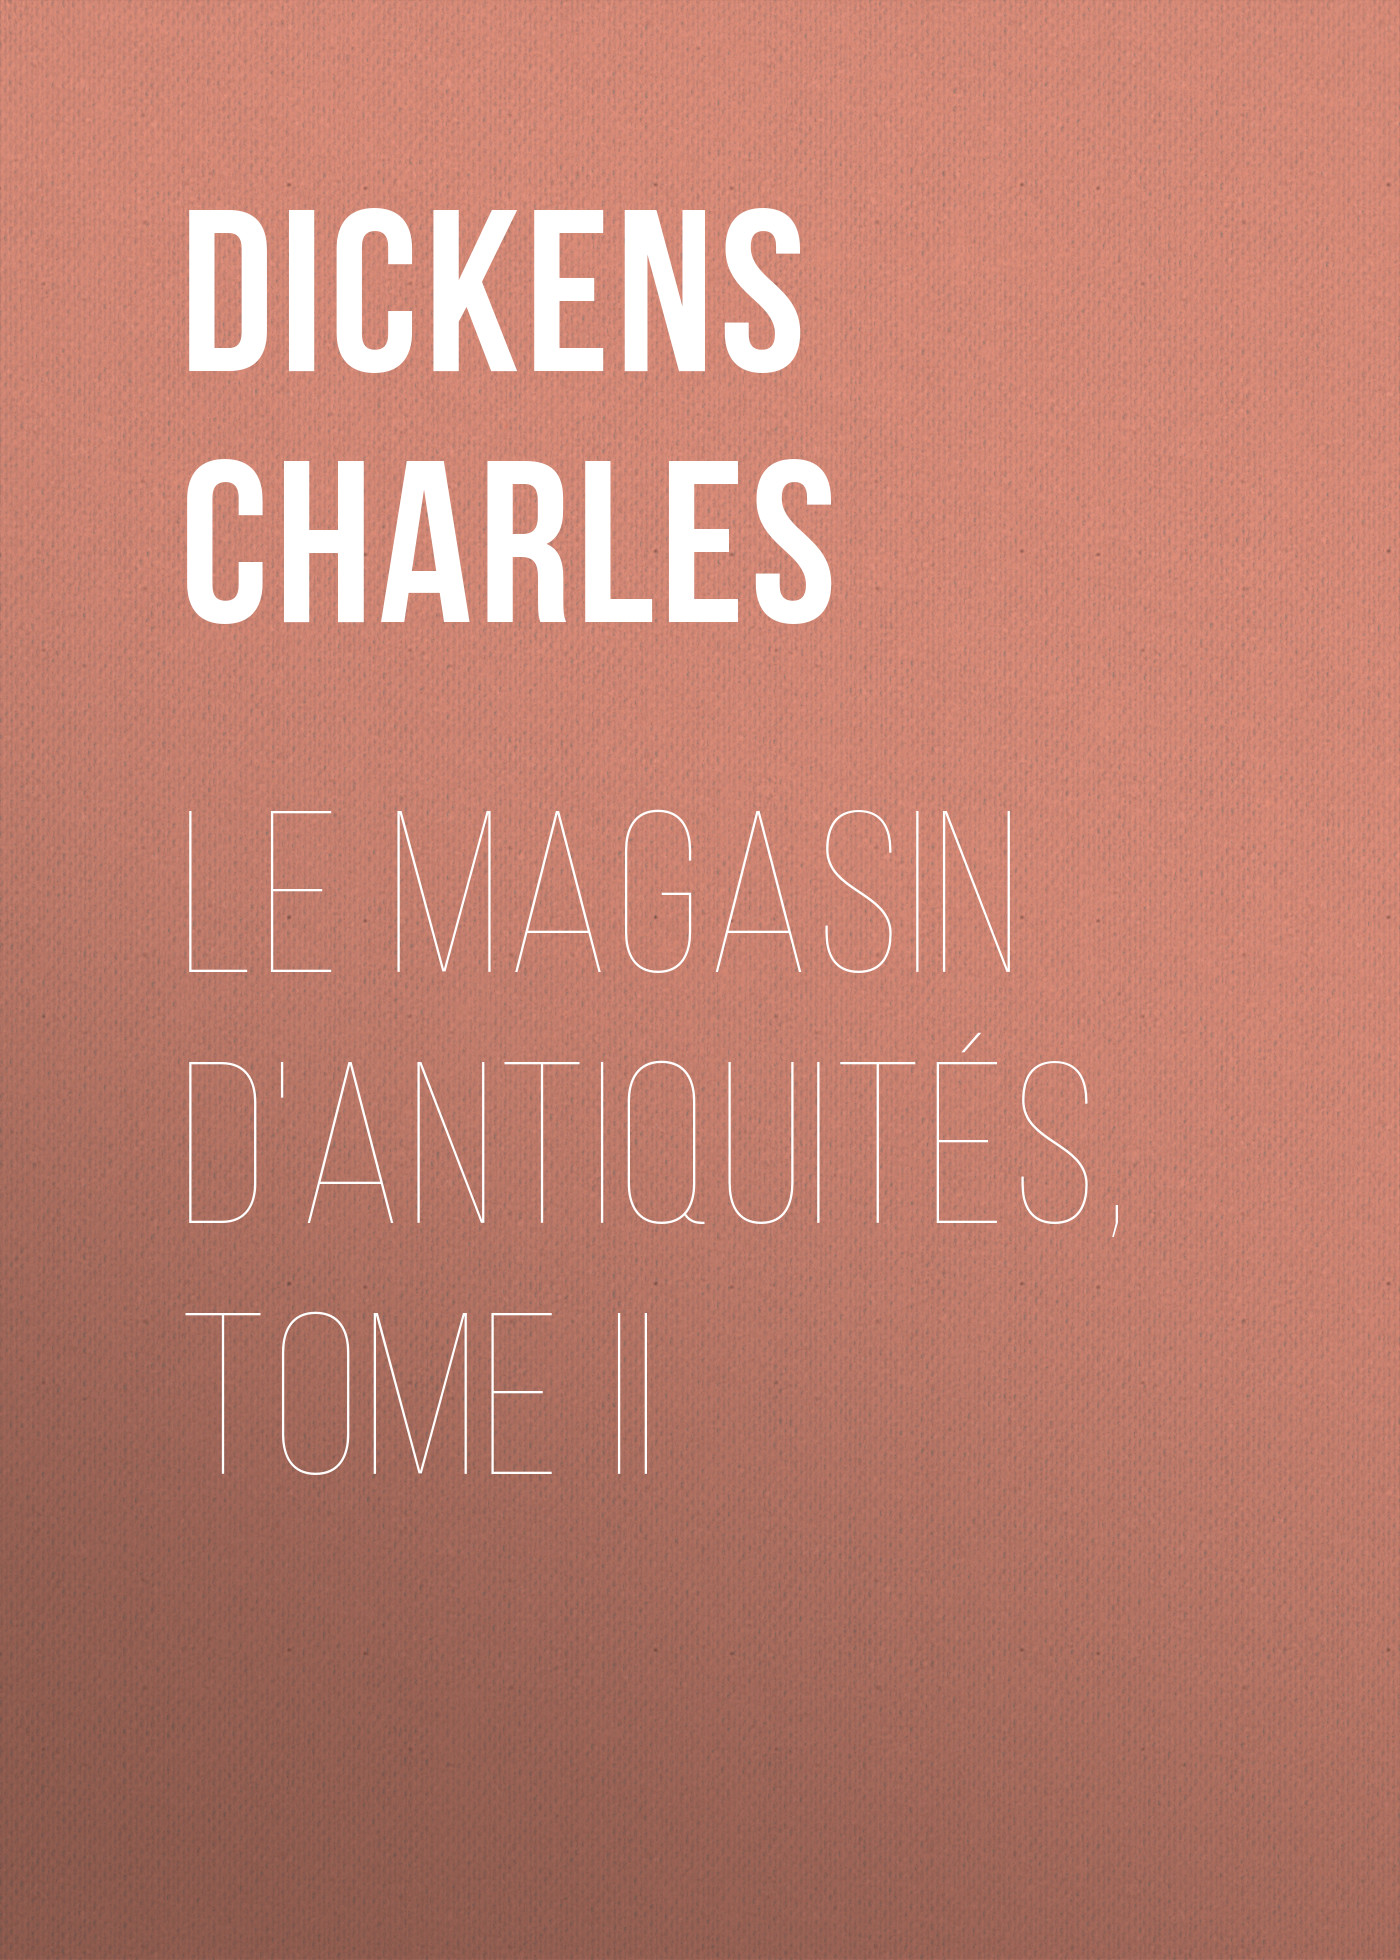 Книга Le magasin d'antiquités, Tome II из серии , созданная Charles Dickens, может относится к жанру Зарубежная старинная литература, Зарубежная классика. Стоимость электронной книги Le magasin d'antiquités, Tome II с идентификатором 25092900 составляет 0 руб.